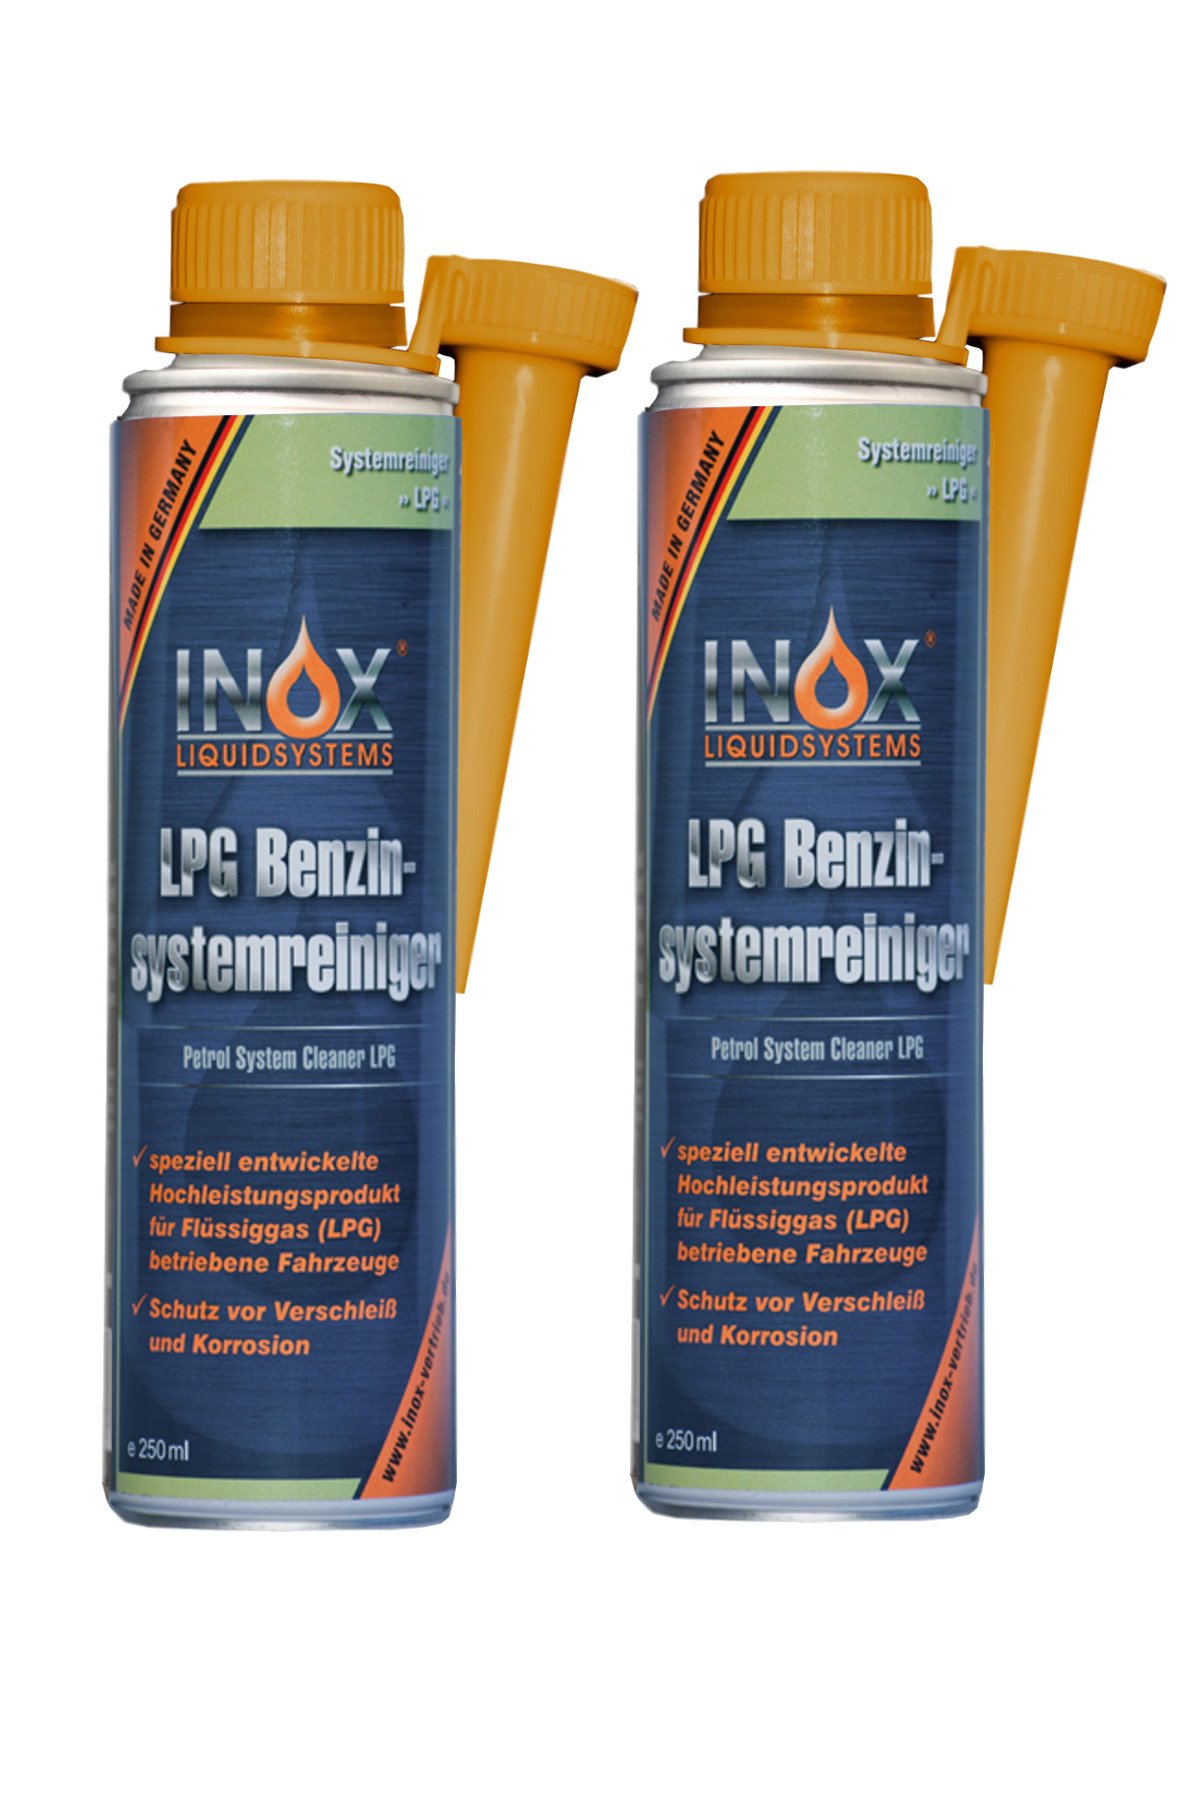 INOX® LPG Benzinsystemreiniger Additiv, 2 x 250ml - Systemreiniger für Autos mit Gasanlage von INOX-LIQUIDSYSTEMS